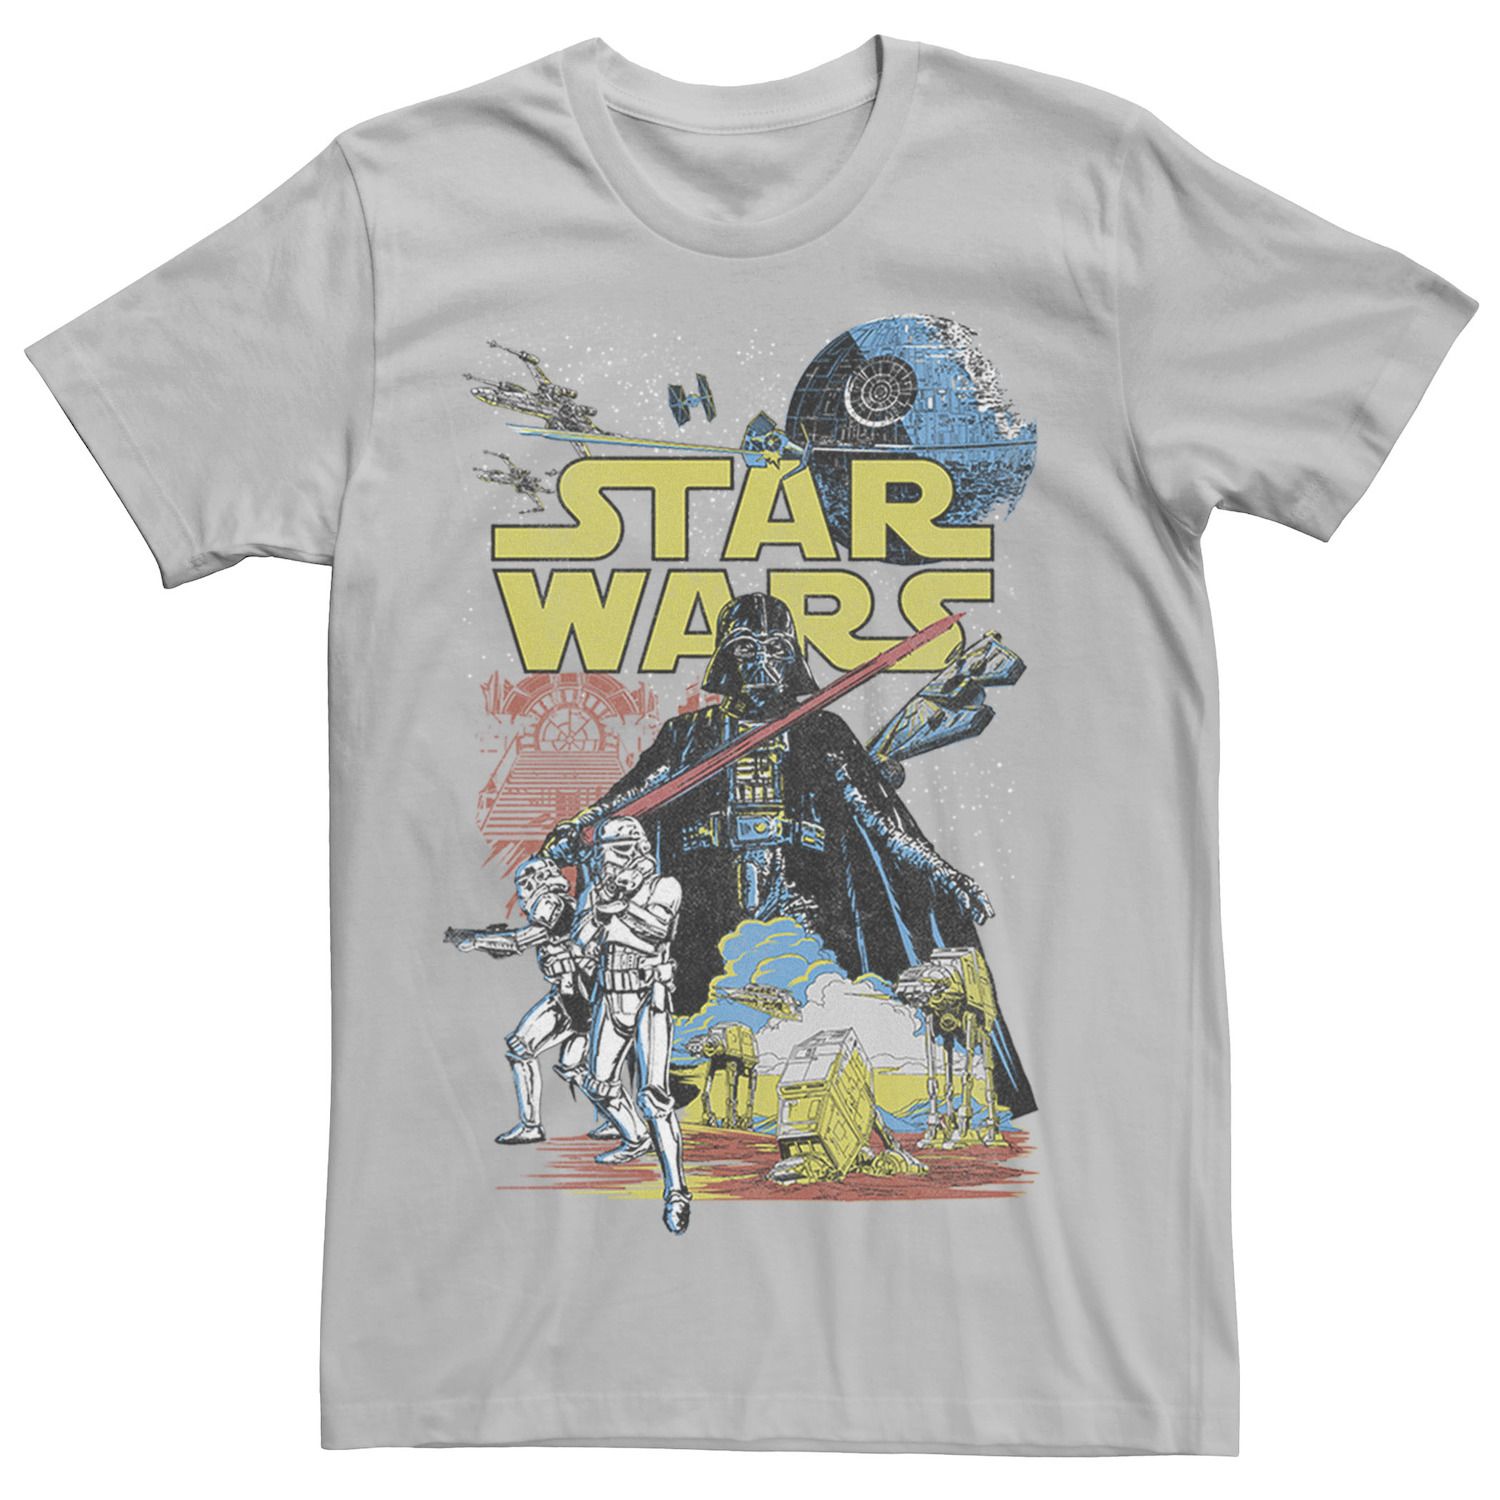 Мужская классическая футболка с графическим плакатом Rebel Star Wars, серебристый мужская классическая футболка с графическим плакатом rebel star wars светло синий